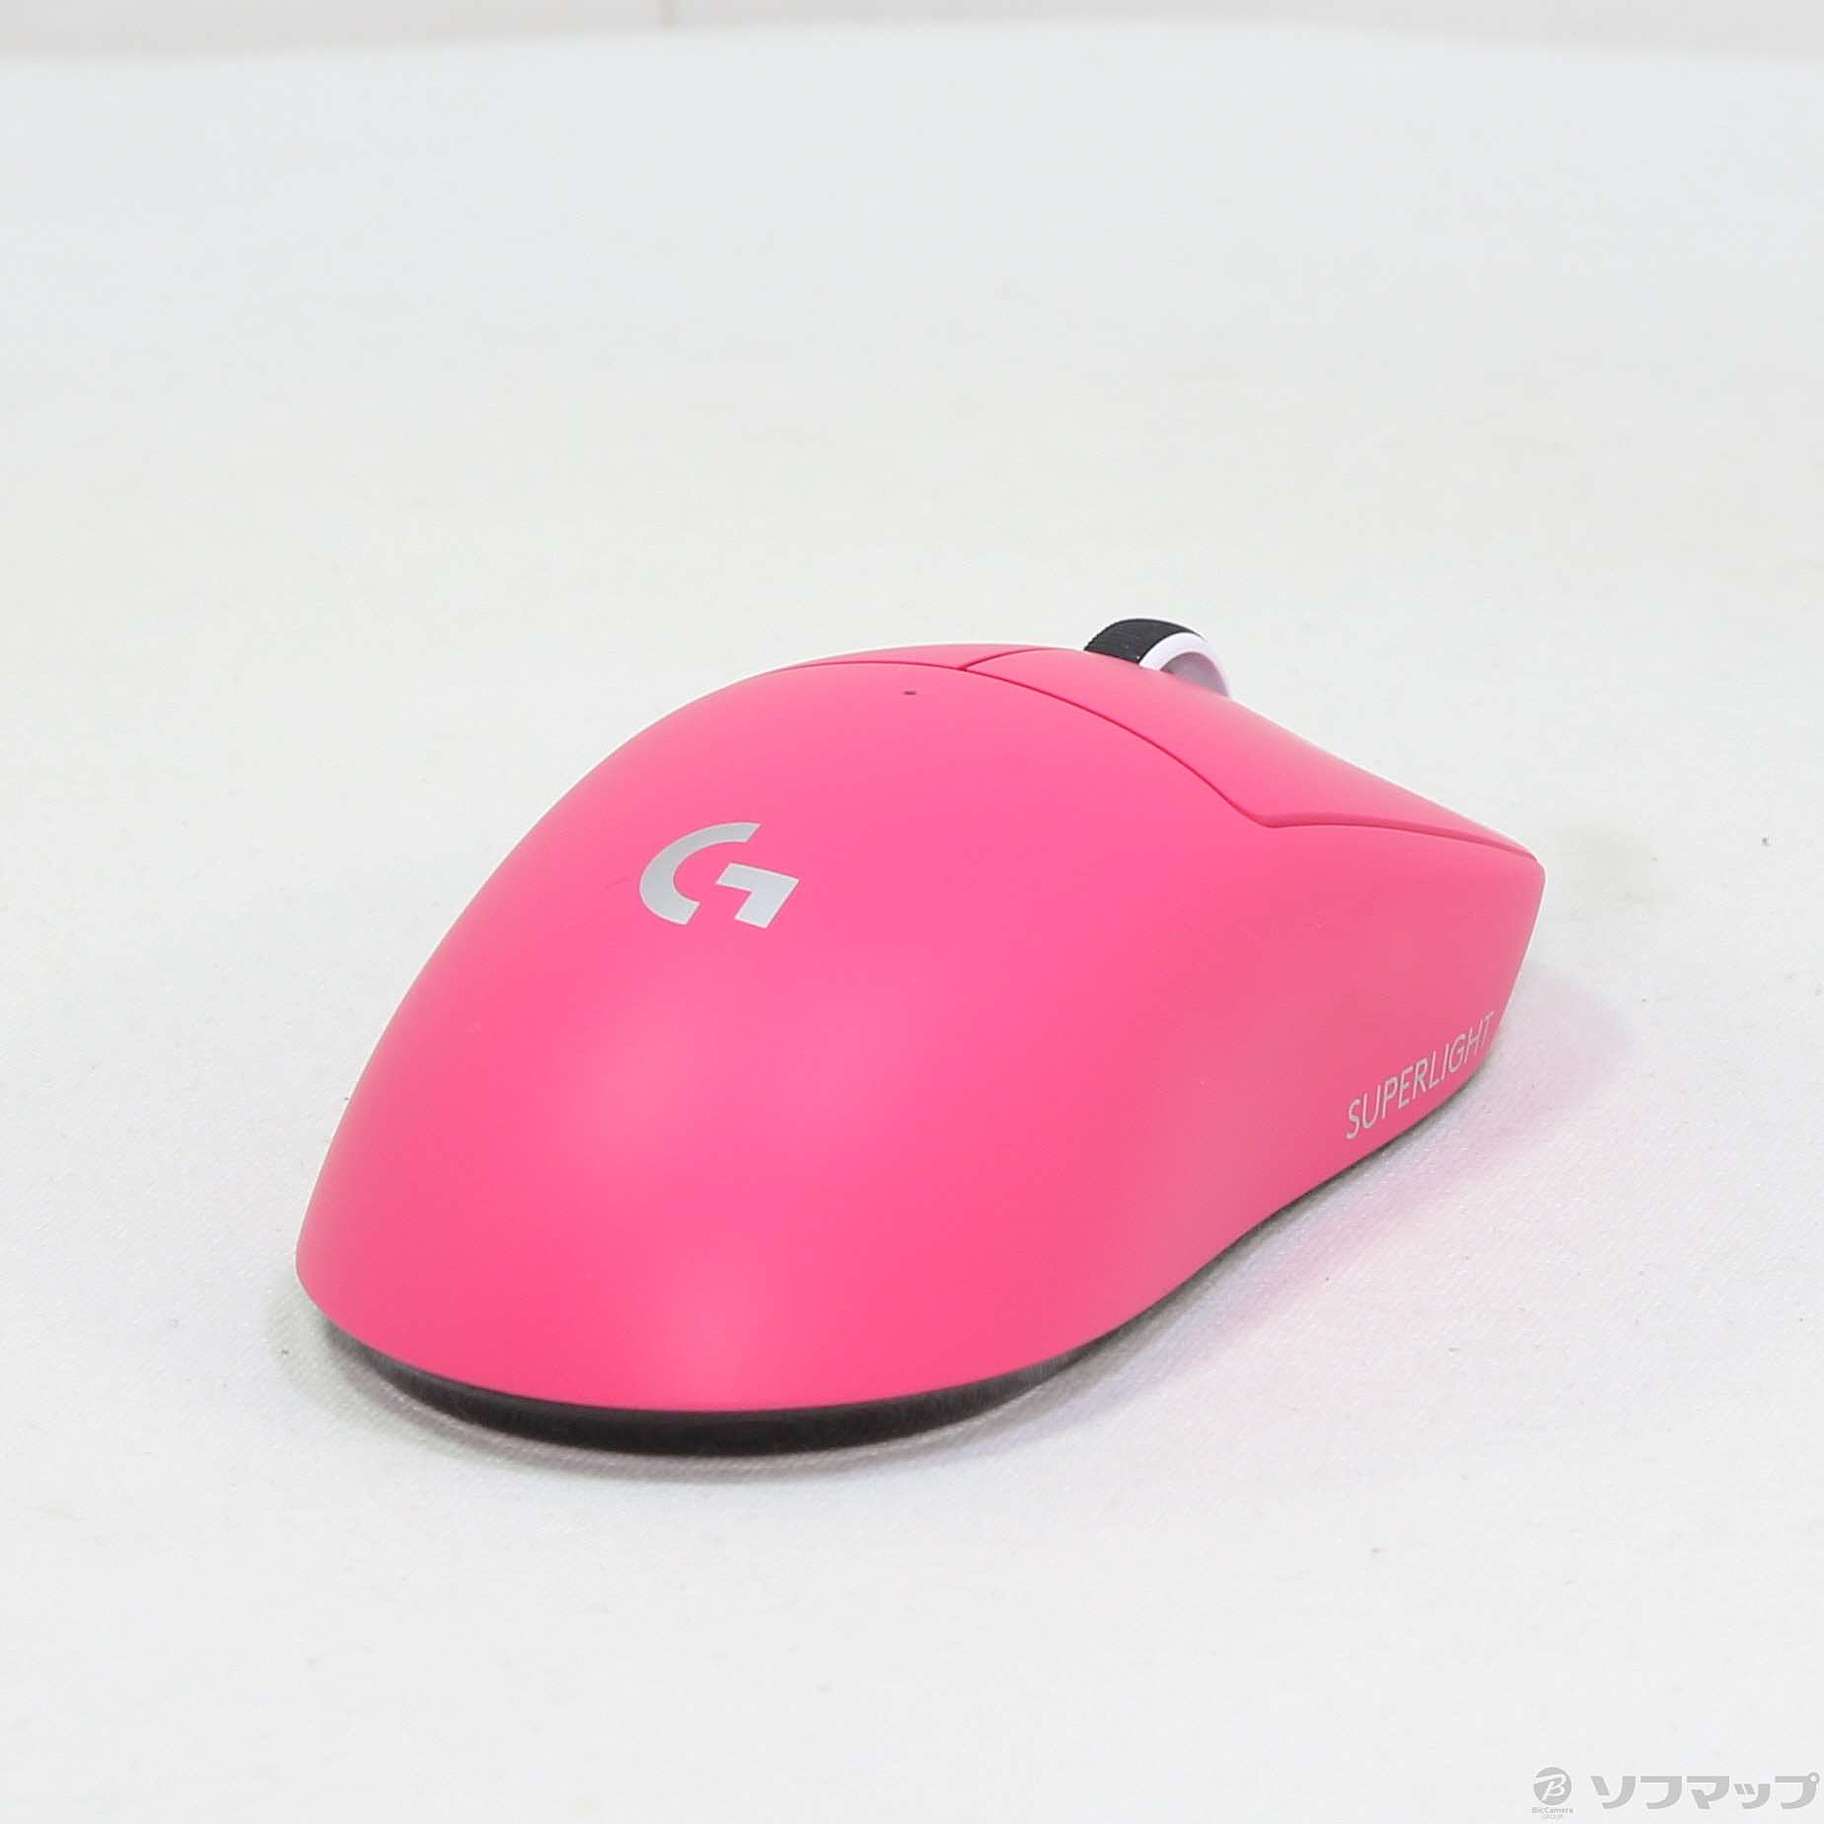 中古】Logicool PRO X SUPERLIGHT Wireless Gaming Mouse マゼンタ G ...